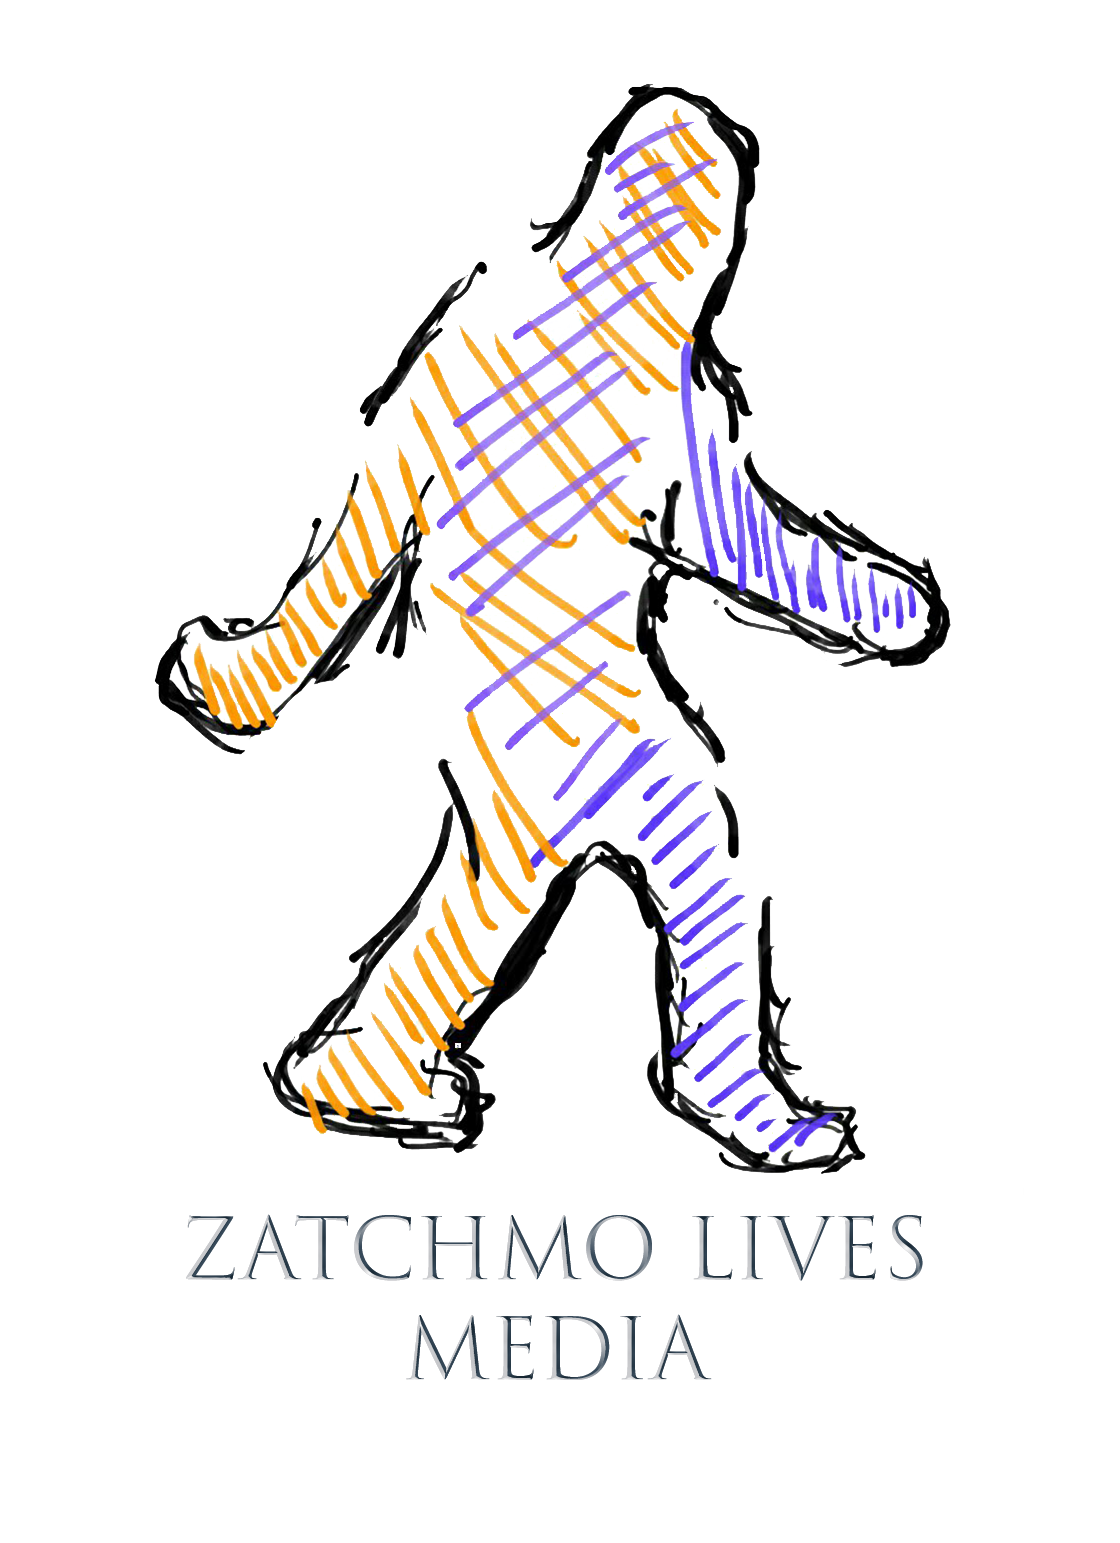 Zatchmo Lives Media